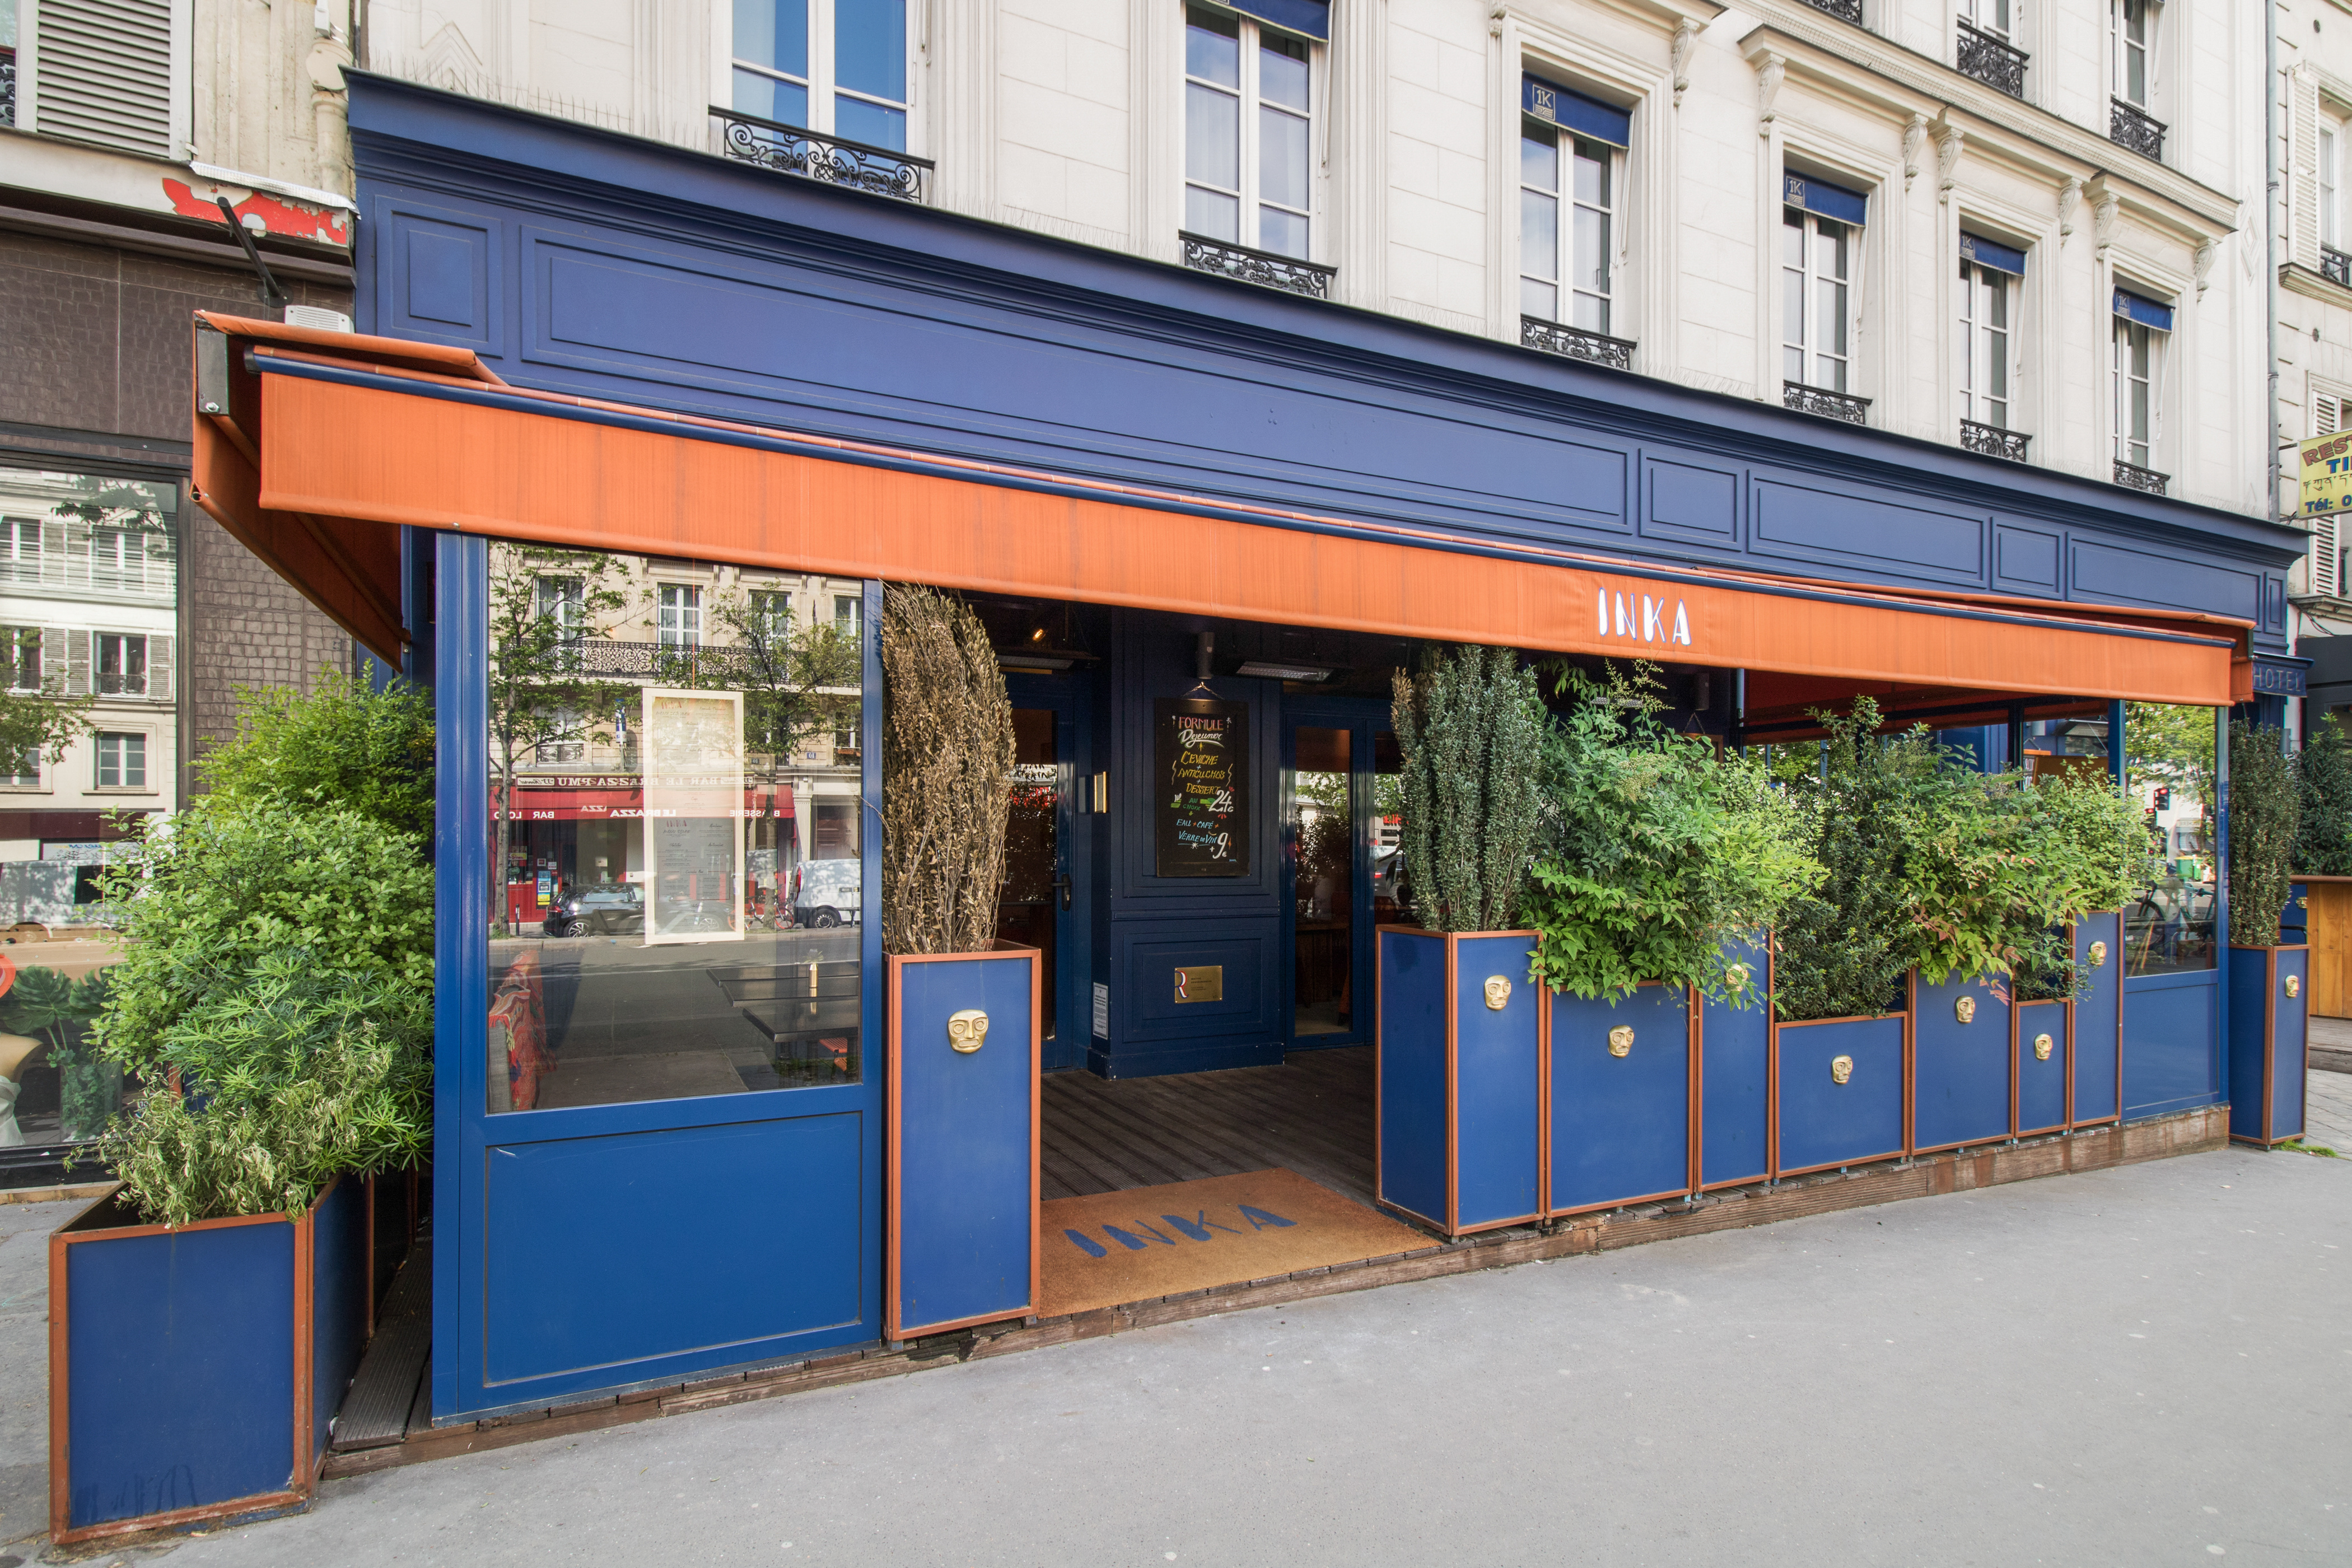 restaurant-paris-brunch-paris-dimanche-ceviche-restaurant-republique-restaurant-terrasse-paris-3restaurant-poisson-pisco-restaurant-healthy-paris-mezcal-138.jpg